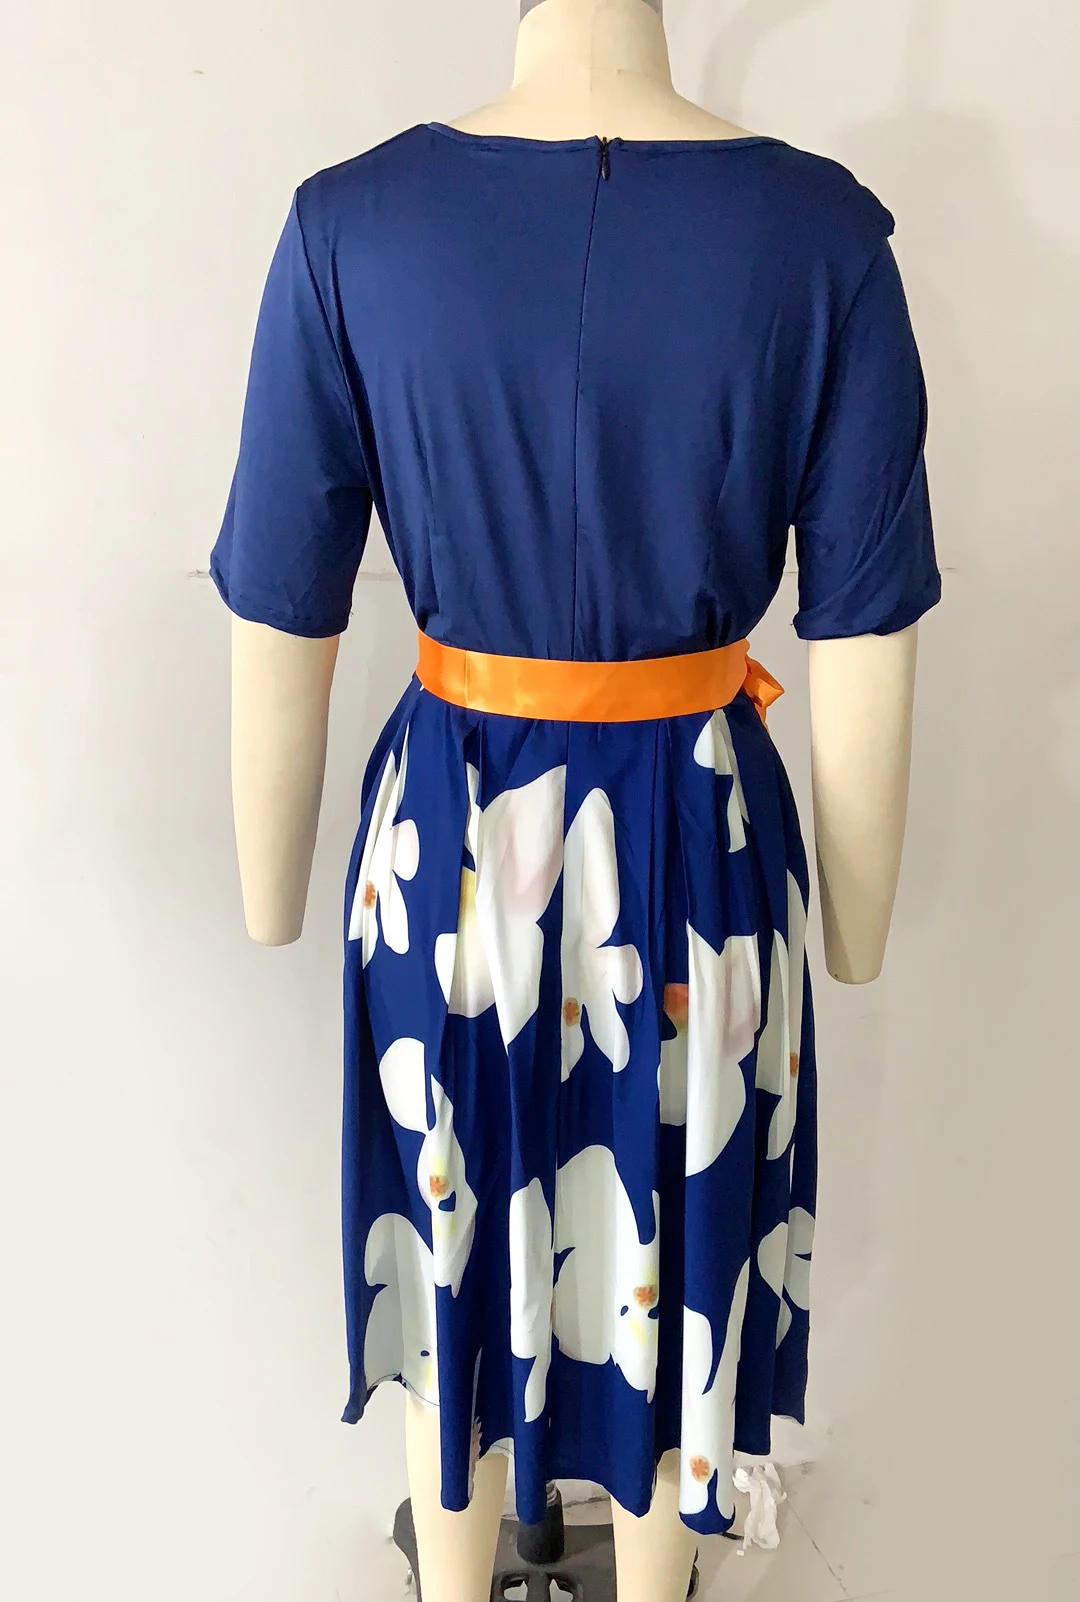 Bonnie Thea женское летнее и осеннее синее платье с принтом женское офисное элегантное платье с цветочным принтом больших размеров вечерние длинные большие платья